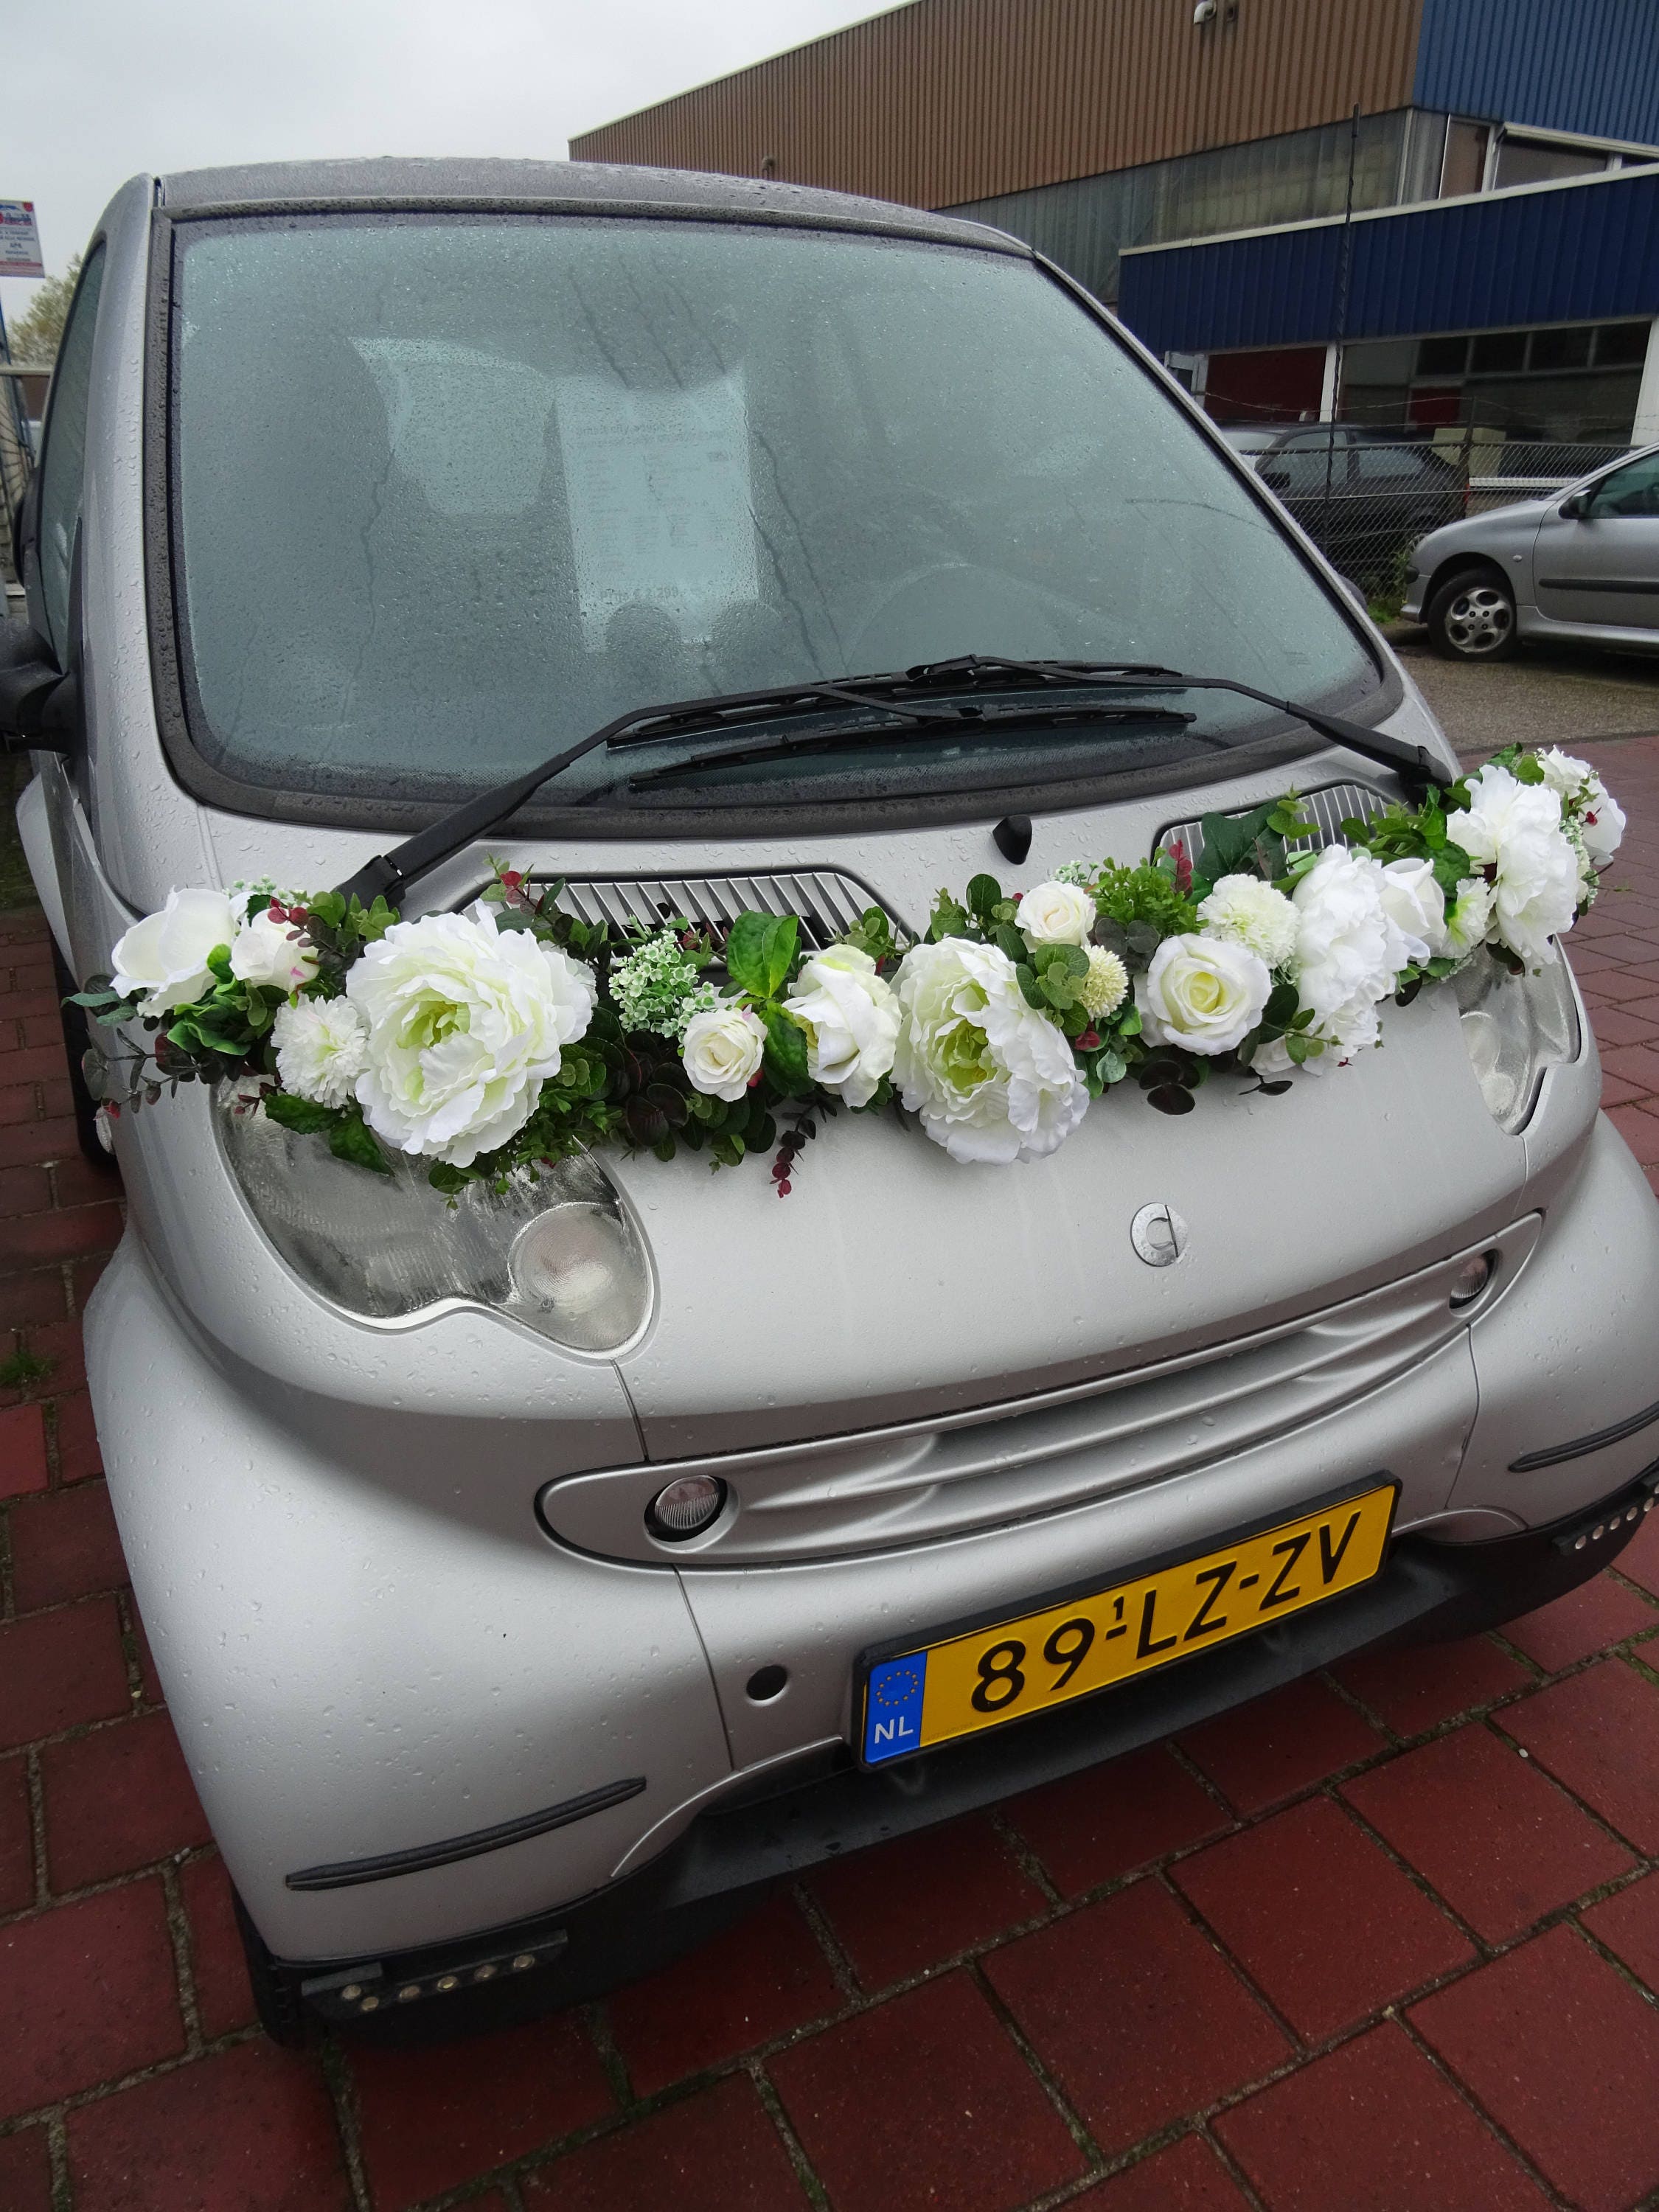 Hochzeit Auto Dekoration Blumengirlande aus Seide Pfingstrosen Rosen Grün  Nie Verwelken Hochzeitsblumen Große Verlobung Geschenkidee - .de